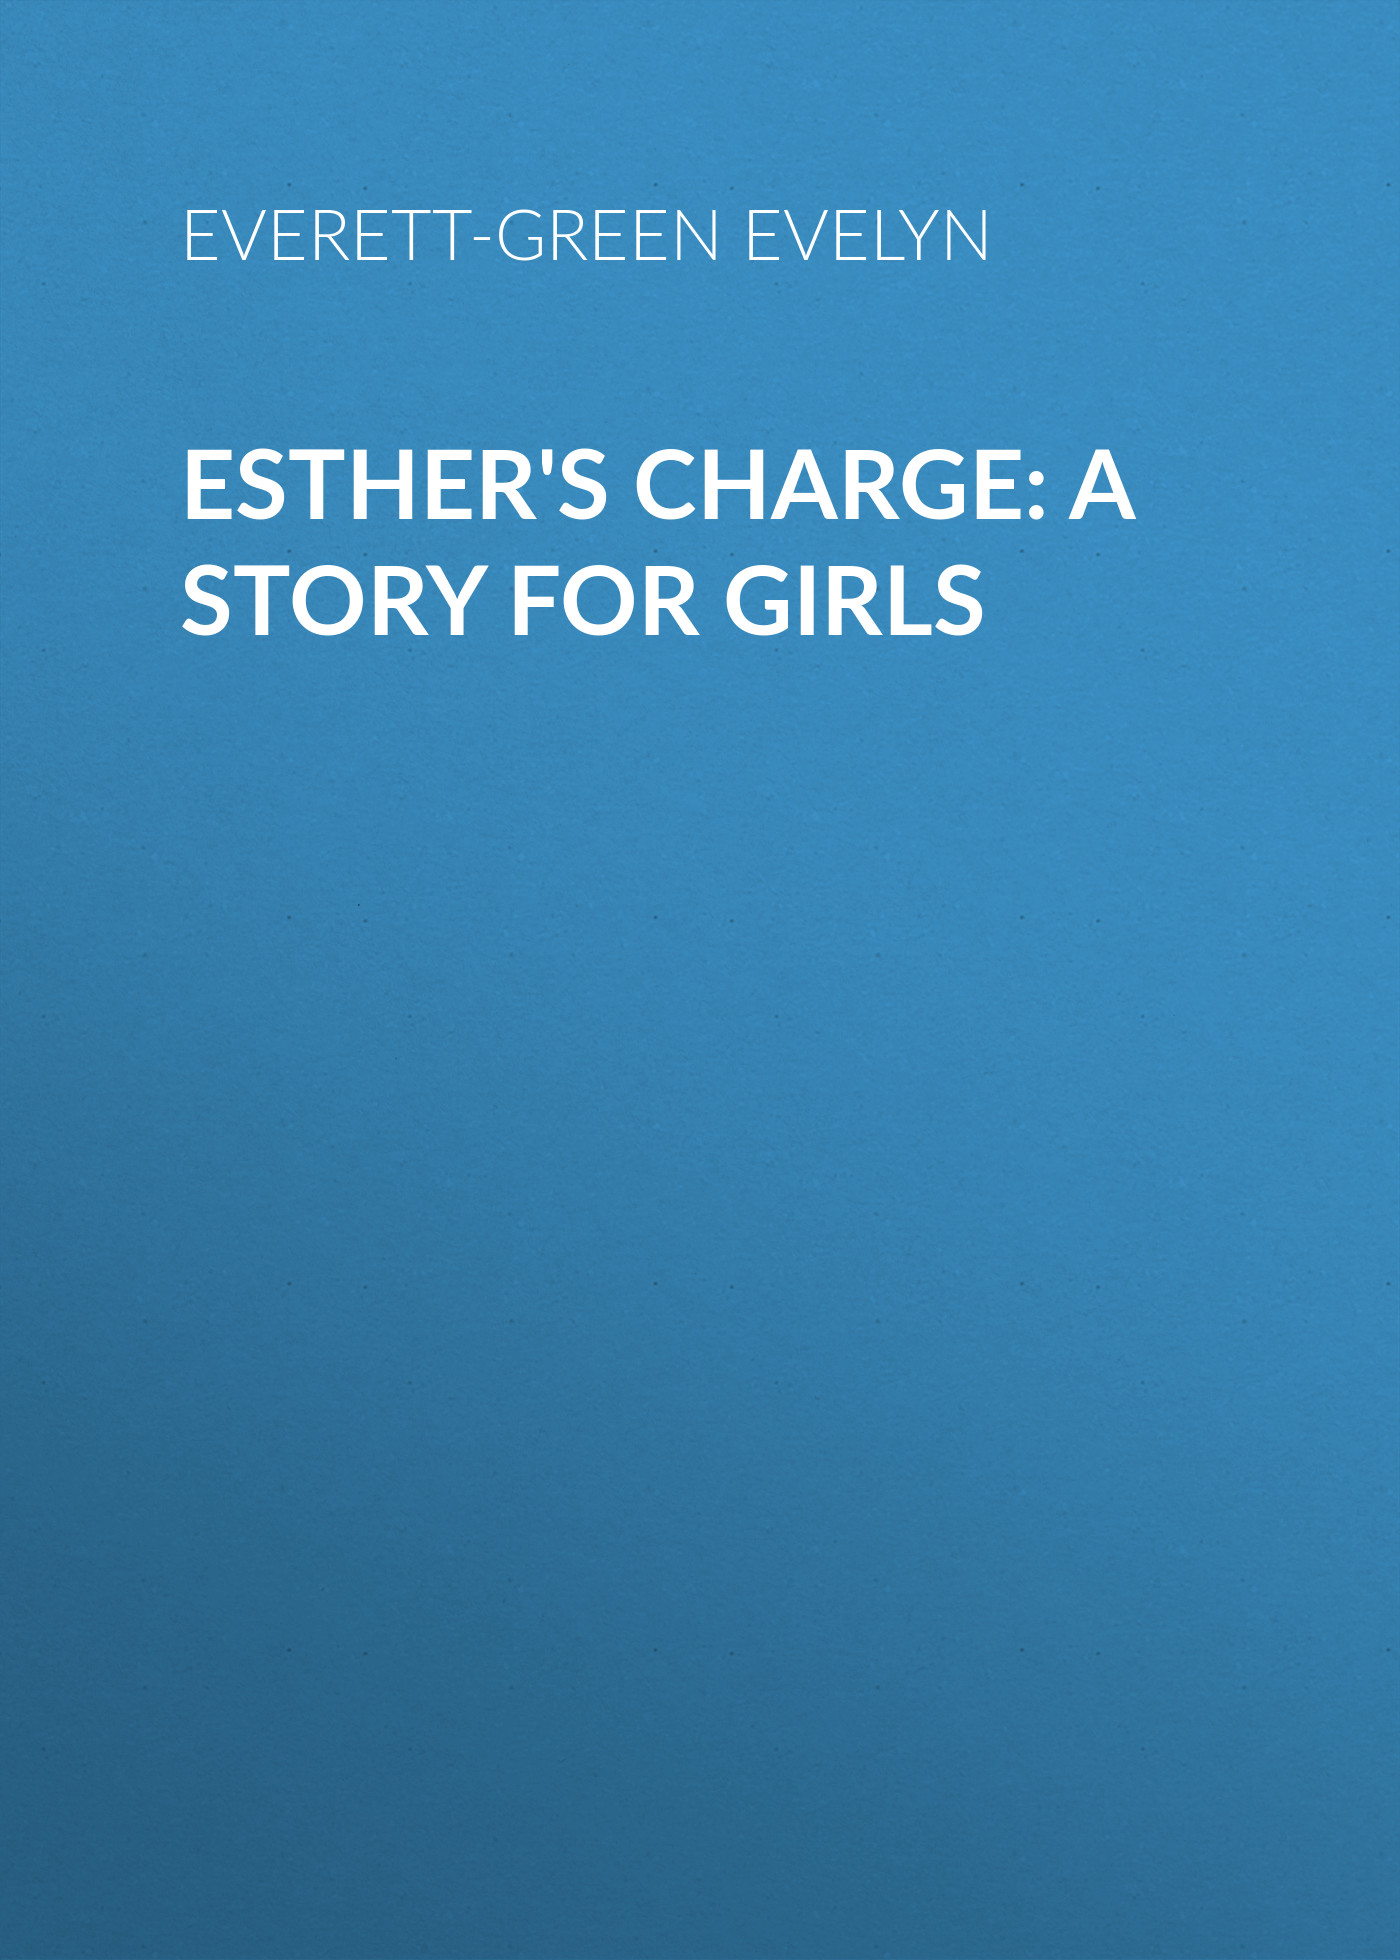 Книга Esther's Charge: A Story for Girls из серии , созданная Evelyn Everett-Green, может относится к жанру Зарубежная старинная литература, Зарубежная классика. Стоимость электронной книги Esther's Charge: A Story for Girls с идентификатором 24713129 составляет 0 руб.